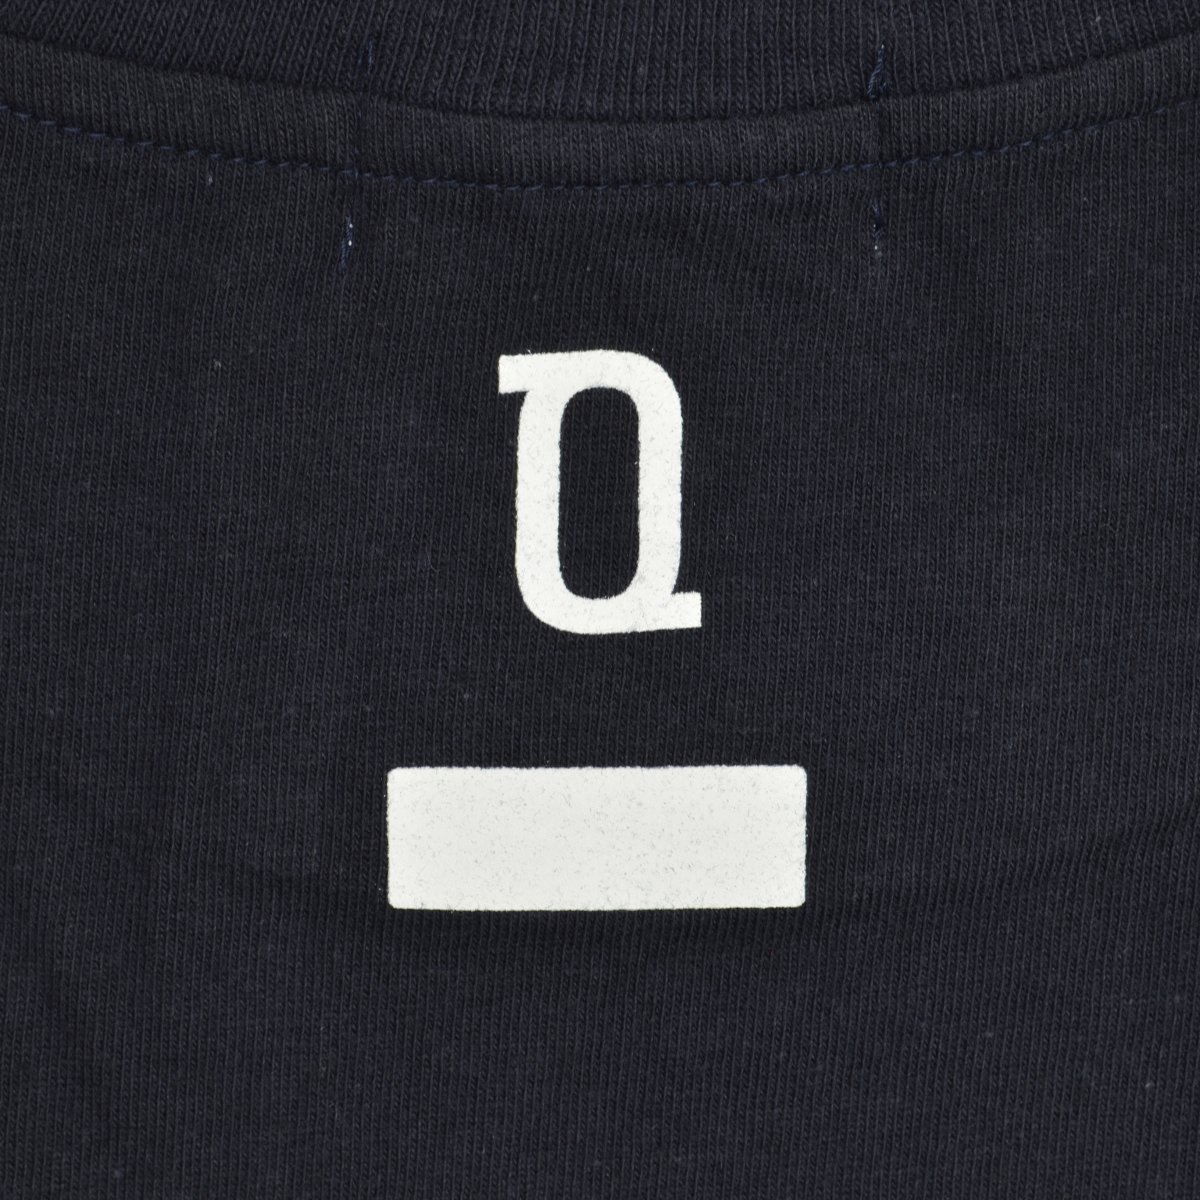 SEQUEL SQ-20AW-ST01 Tシャツ L ネイビー - Tシャツ/カットソー(半袖 ...